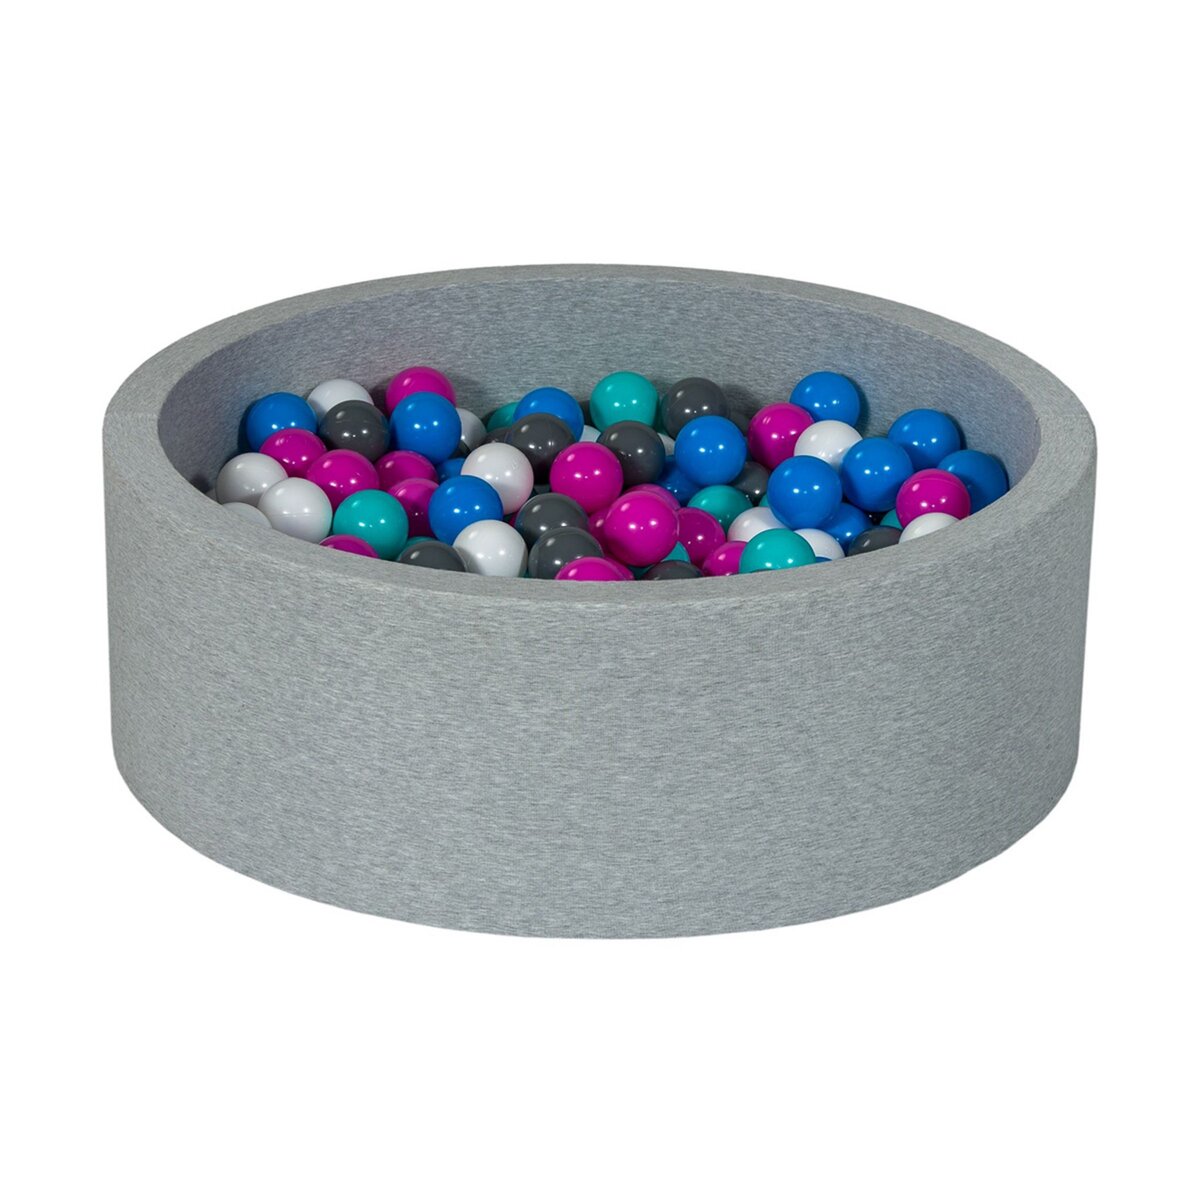  Piscine à balles Aire de jeu + 300 balles blanc, bleu, rose, gris, turquoise